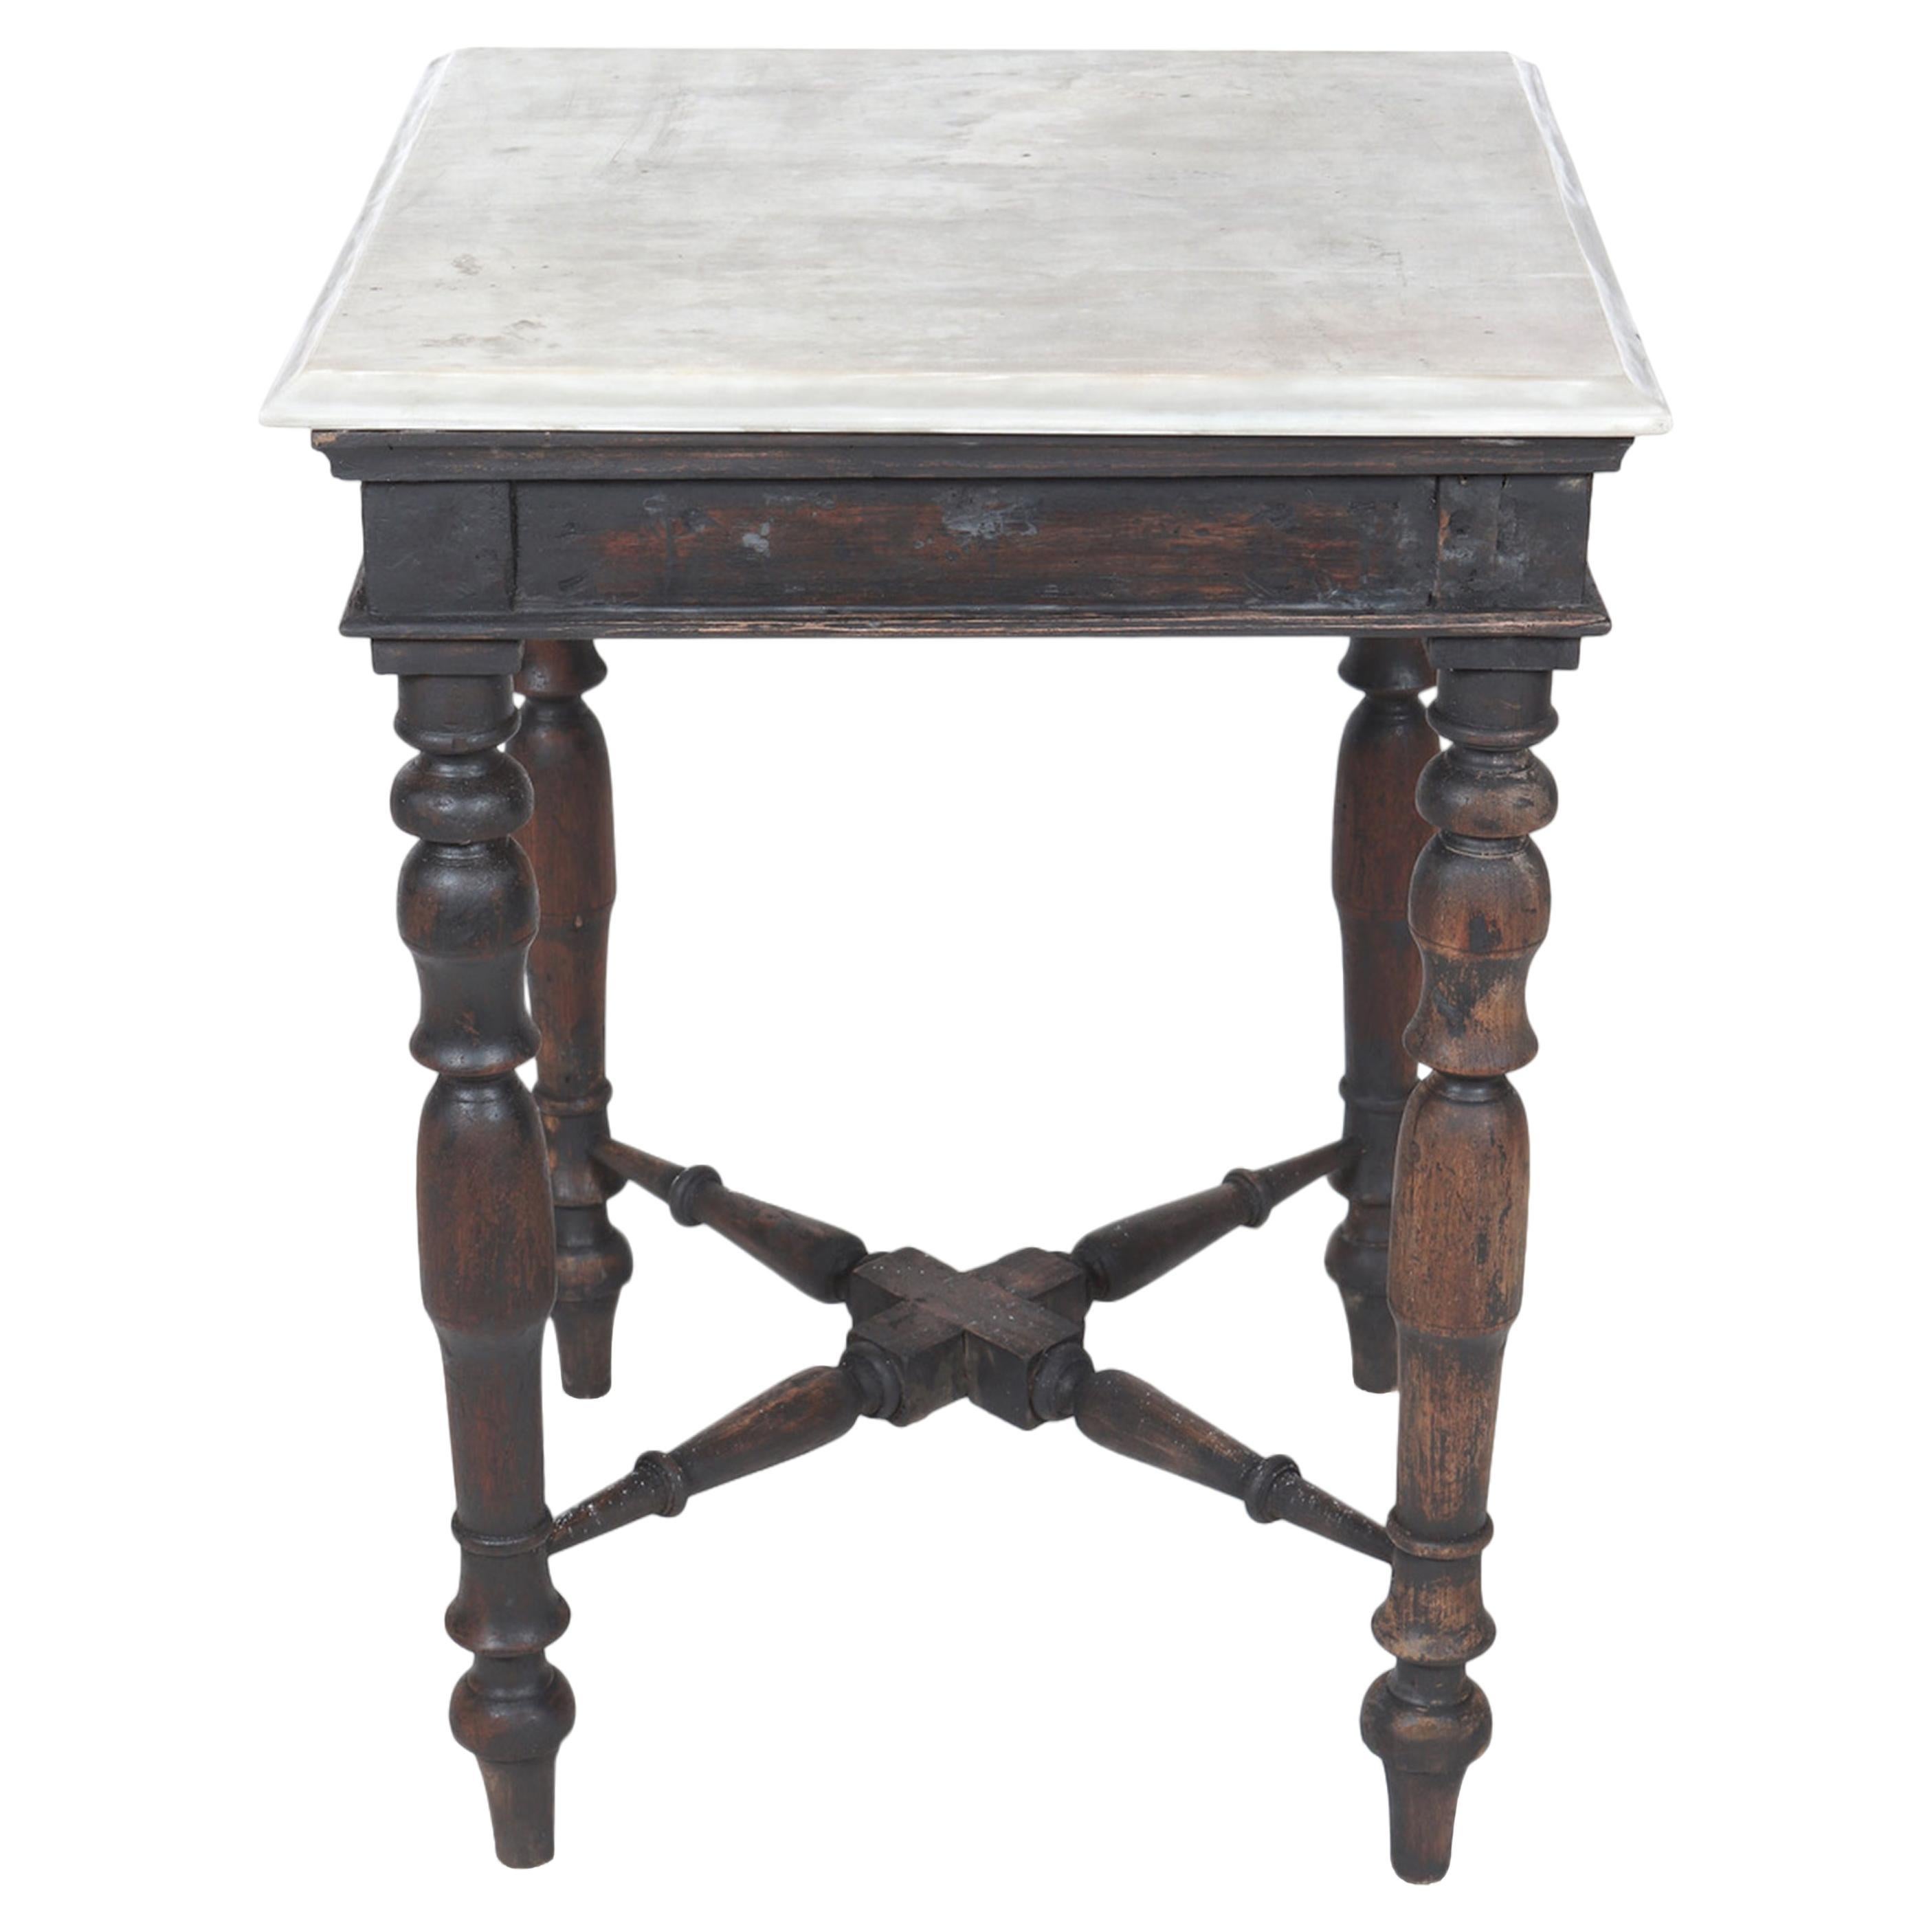 Ein exquisiter Beistelltisch aus Teakholz mit Marmorplatte. Der Tisch bewahrt seine originale italienische Marmorplatte mit abgeschrägter Kante, mit wunderschön gedrechselten Füßen und den originalen Querstreben am Sockel.